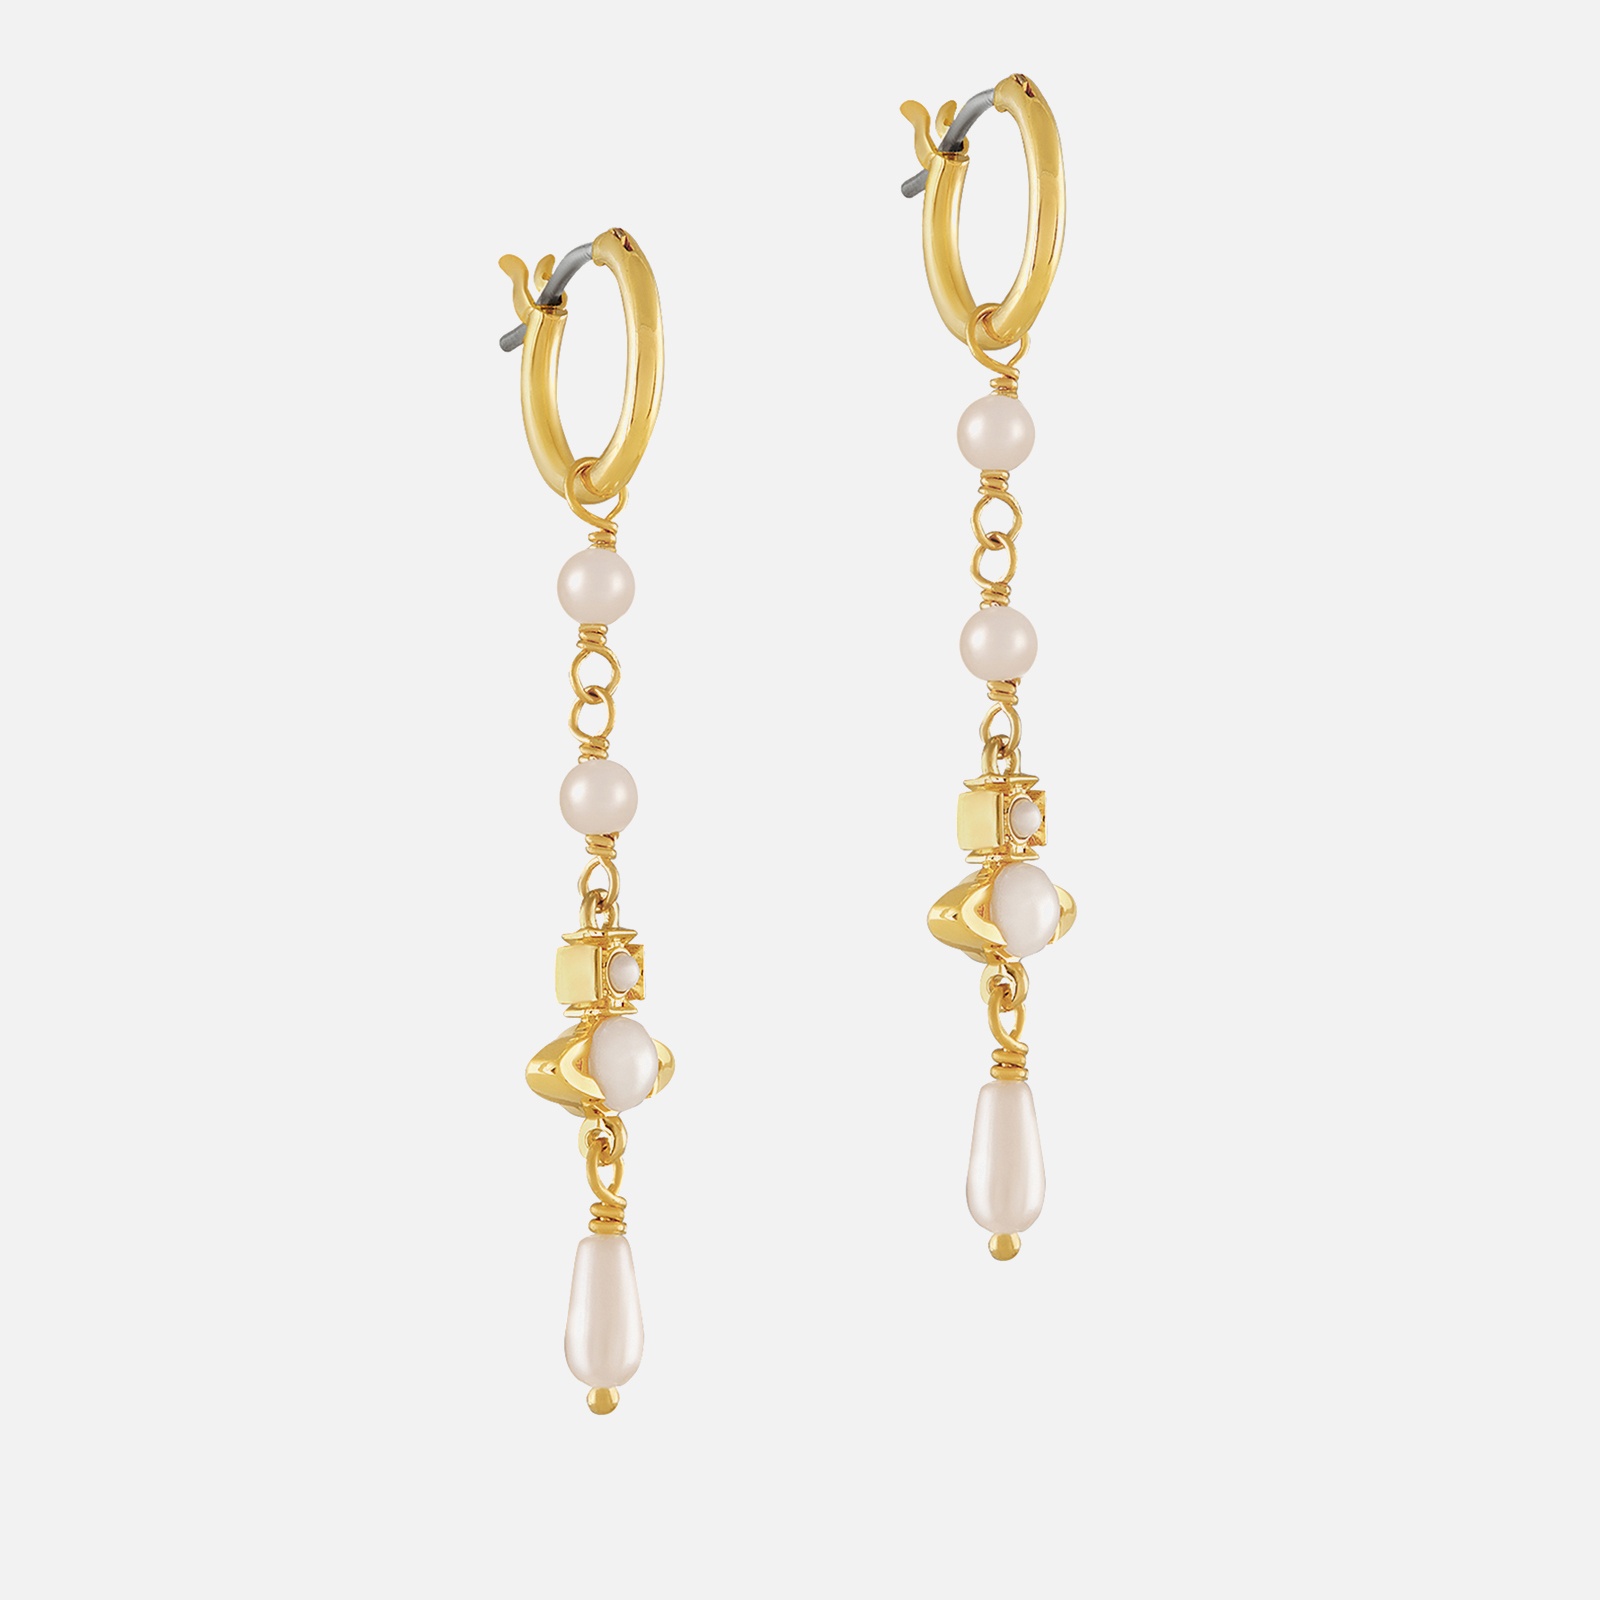 Vivienne Westwood Women's Emiliana Gold Tone Drop Earrings - Gold/Creamrose - 2